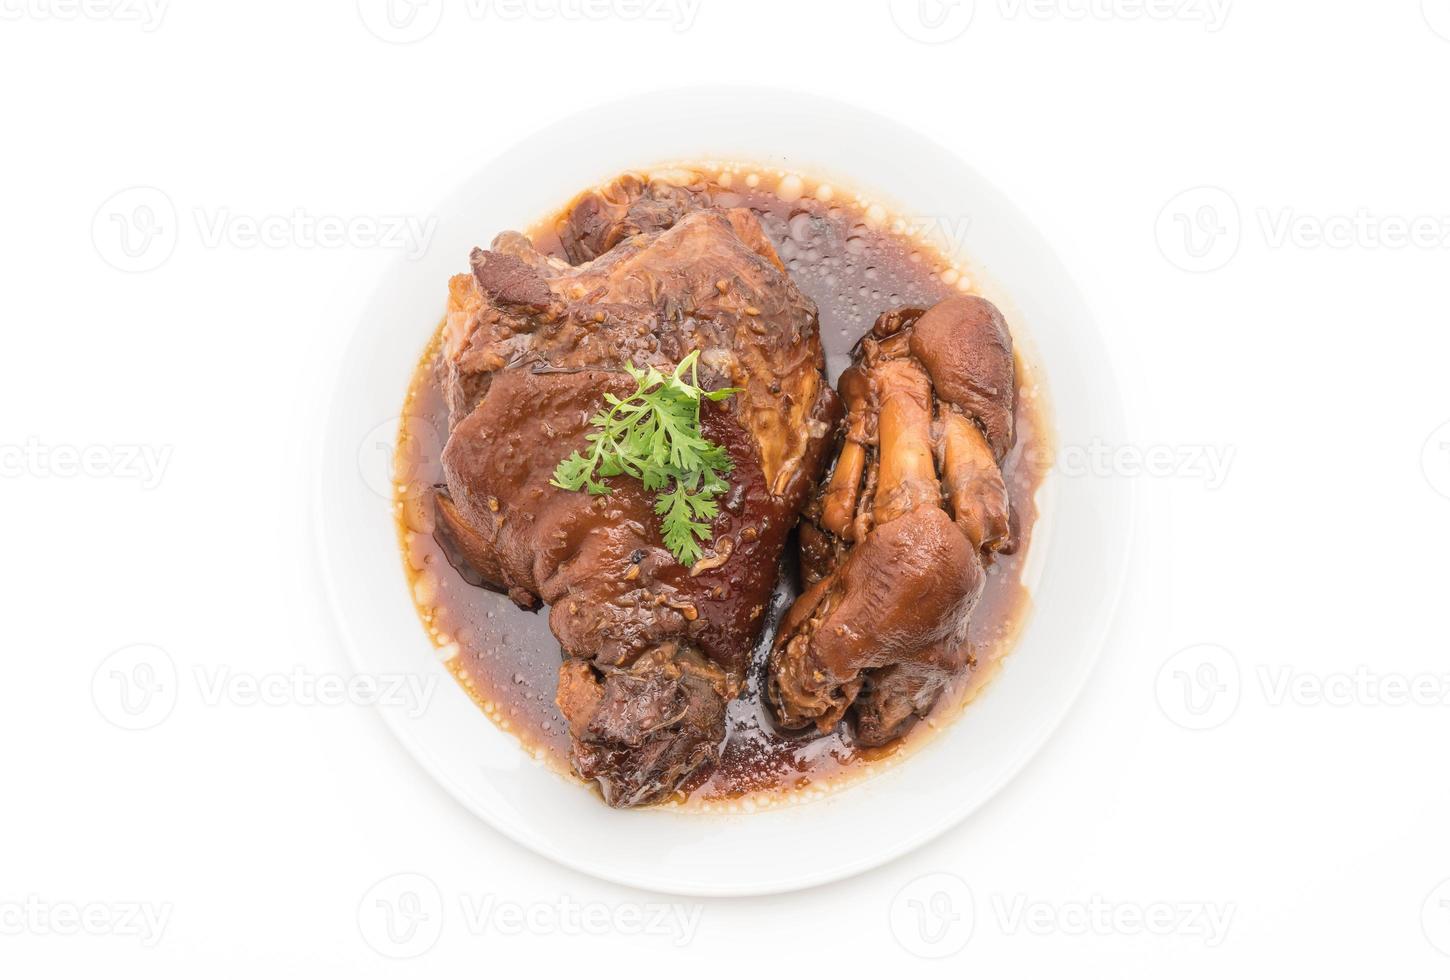 pierna de cerdo guisada en sopa de salsa foto